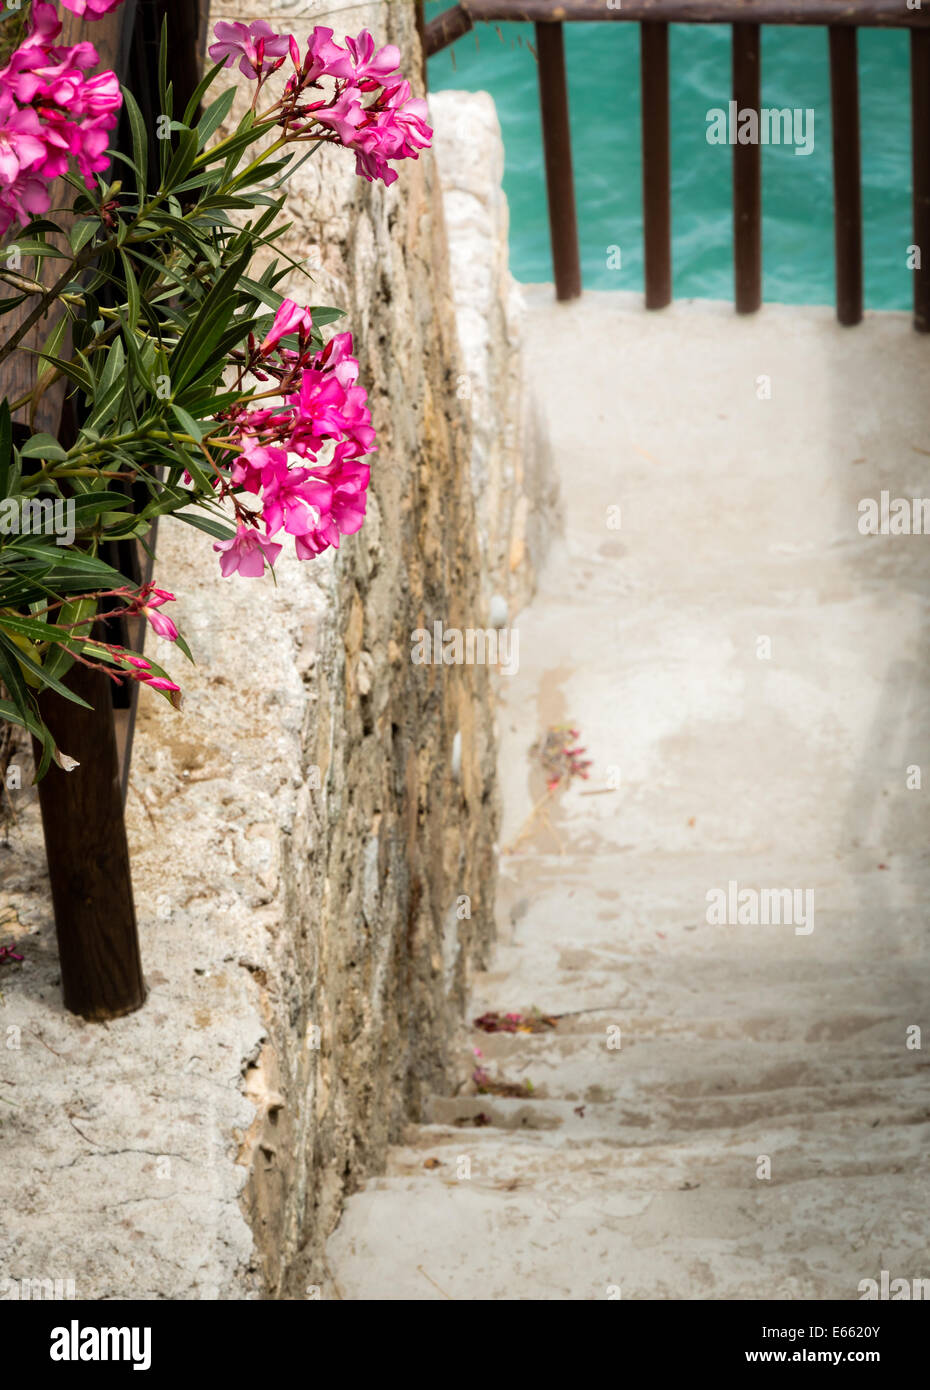 Percorso a piedi attraverso un rigoglioso giardino di fiori rossi in una soleggiata località in Grecia Foto Stock